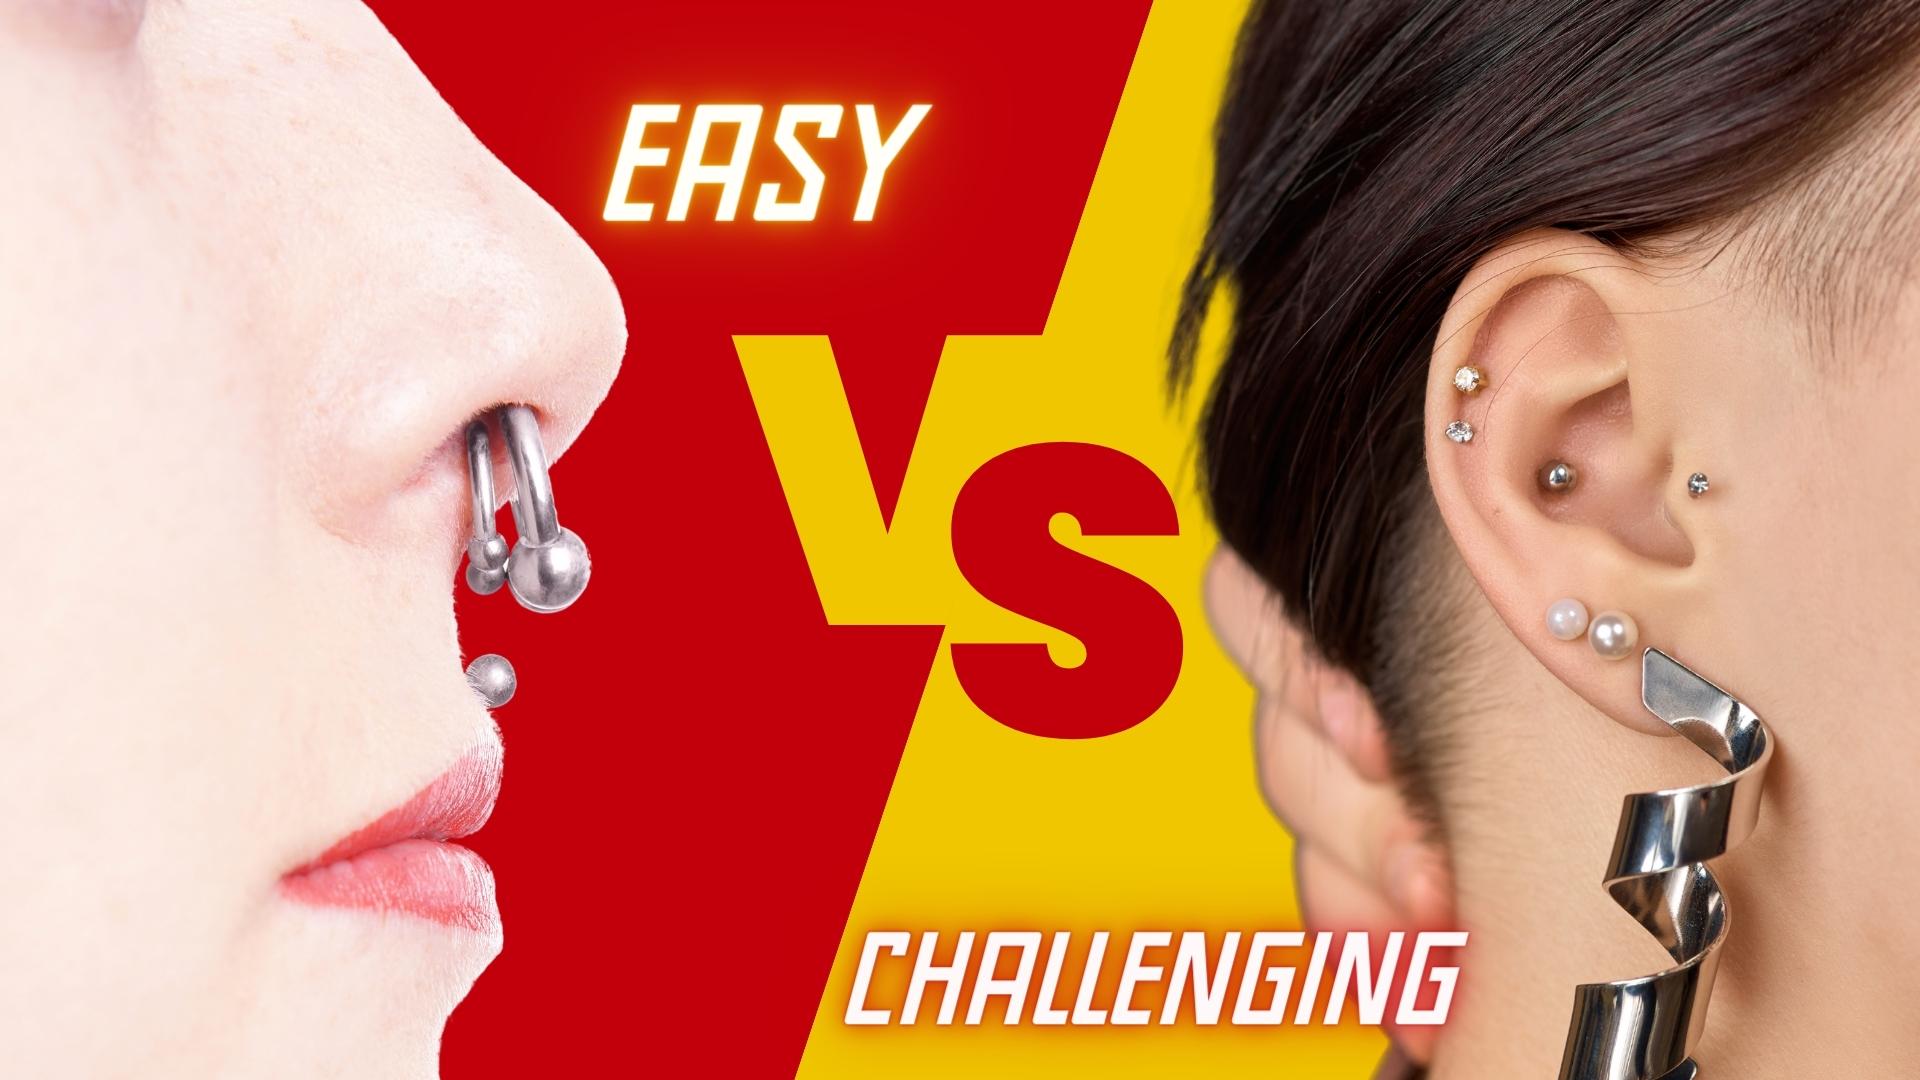 Healing Piercings: Easy vs. Challenging